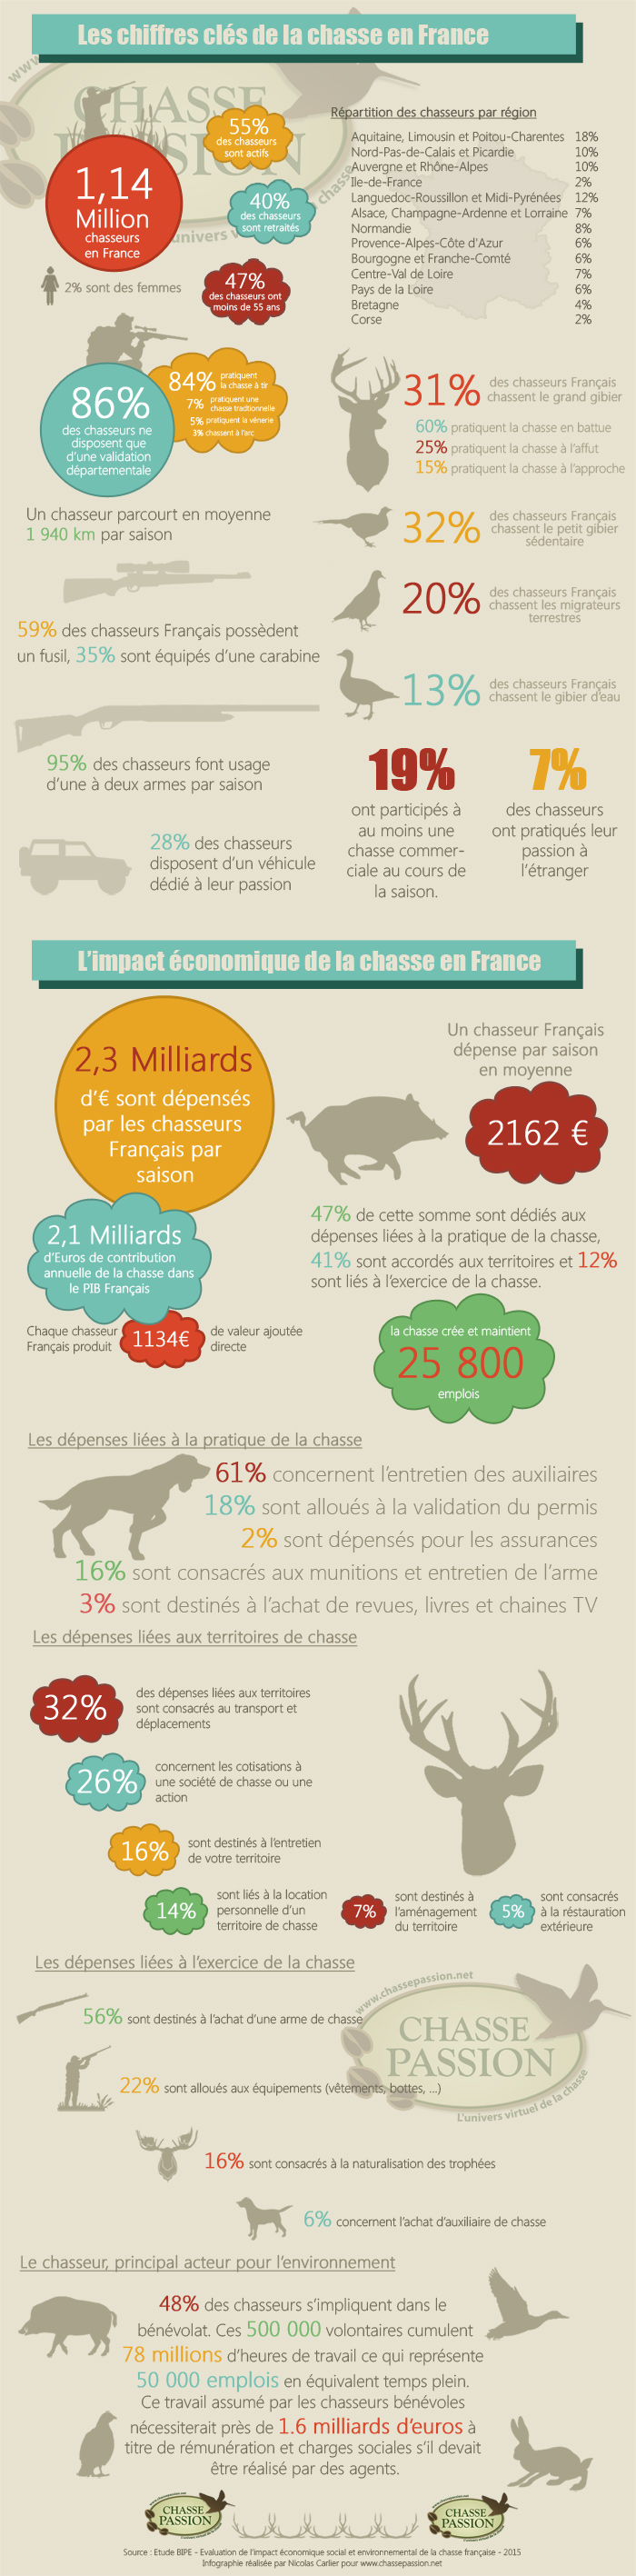 Infographie des chiffres clés de la chasse en France